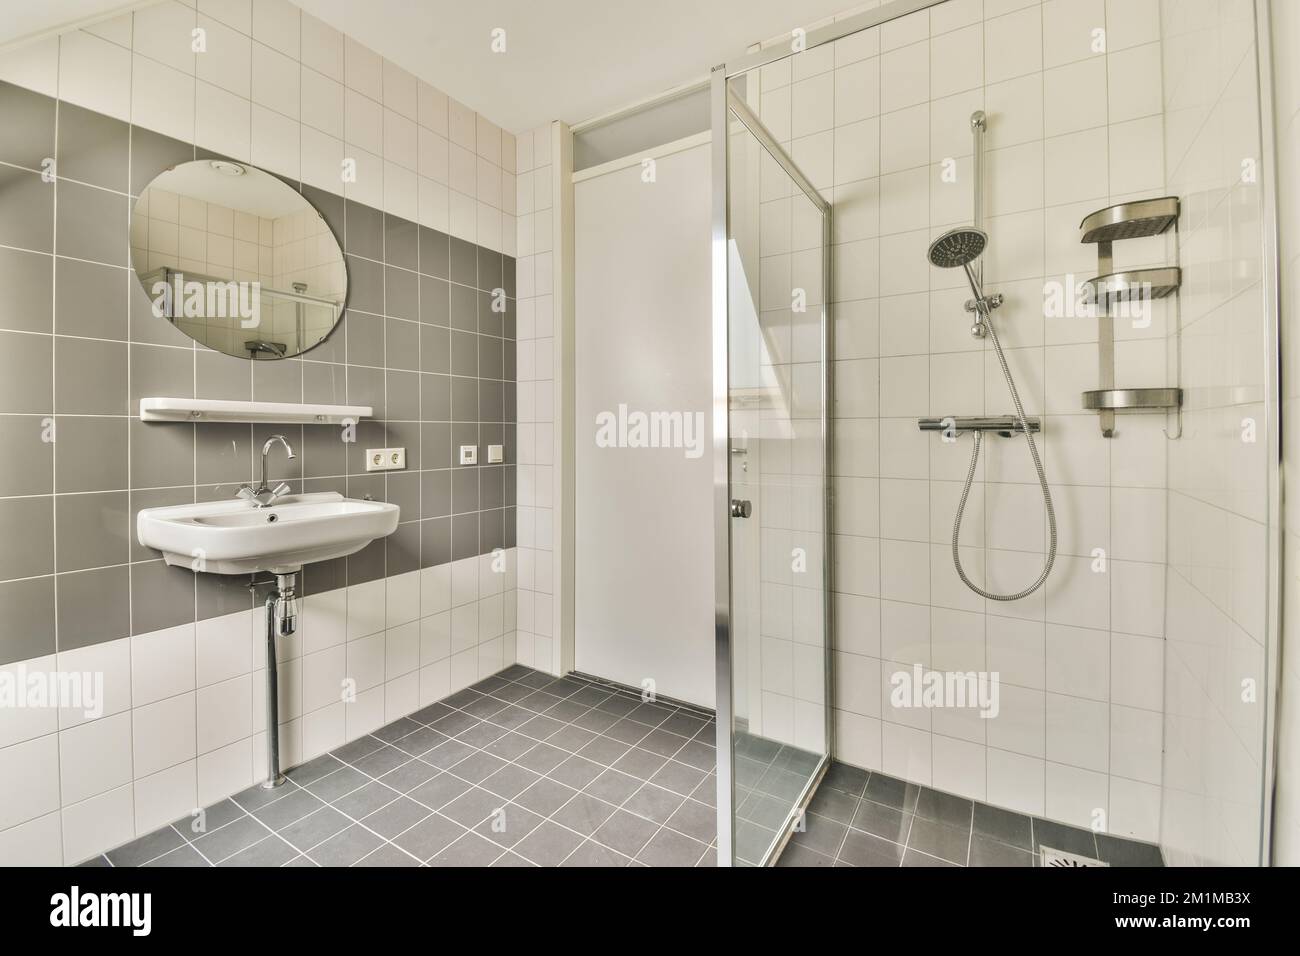 Cloison en verre entre le robinet de douche et les toilettes dans les toilettes modernes de la maison Banque D'Images